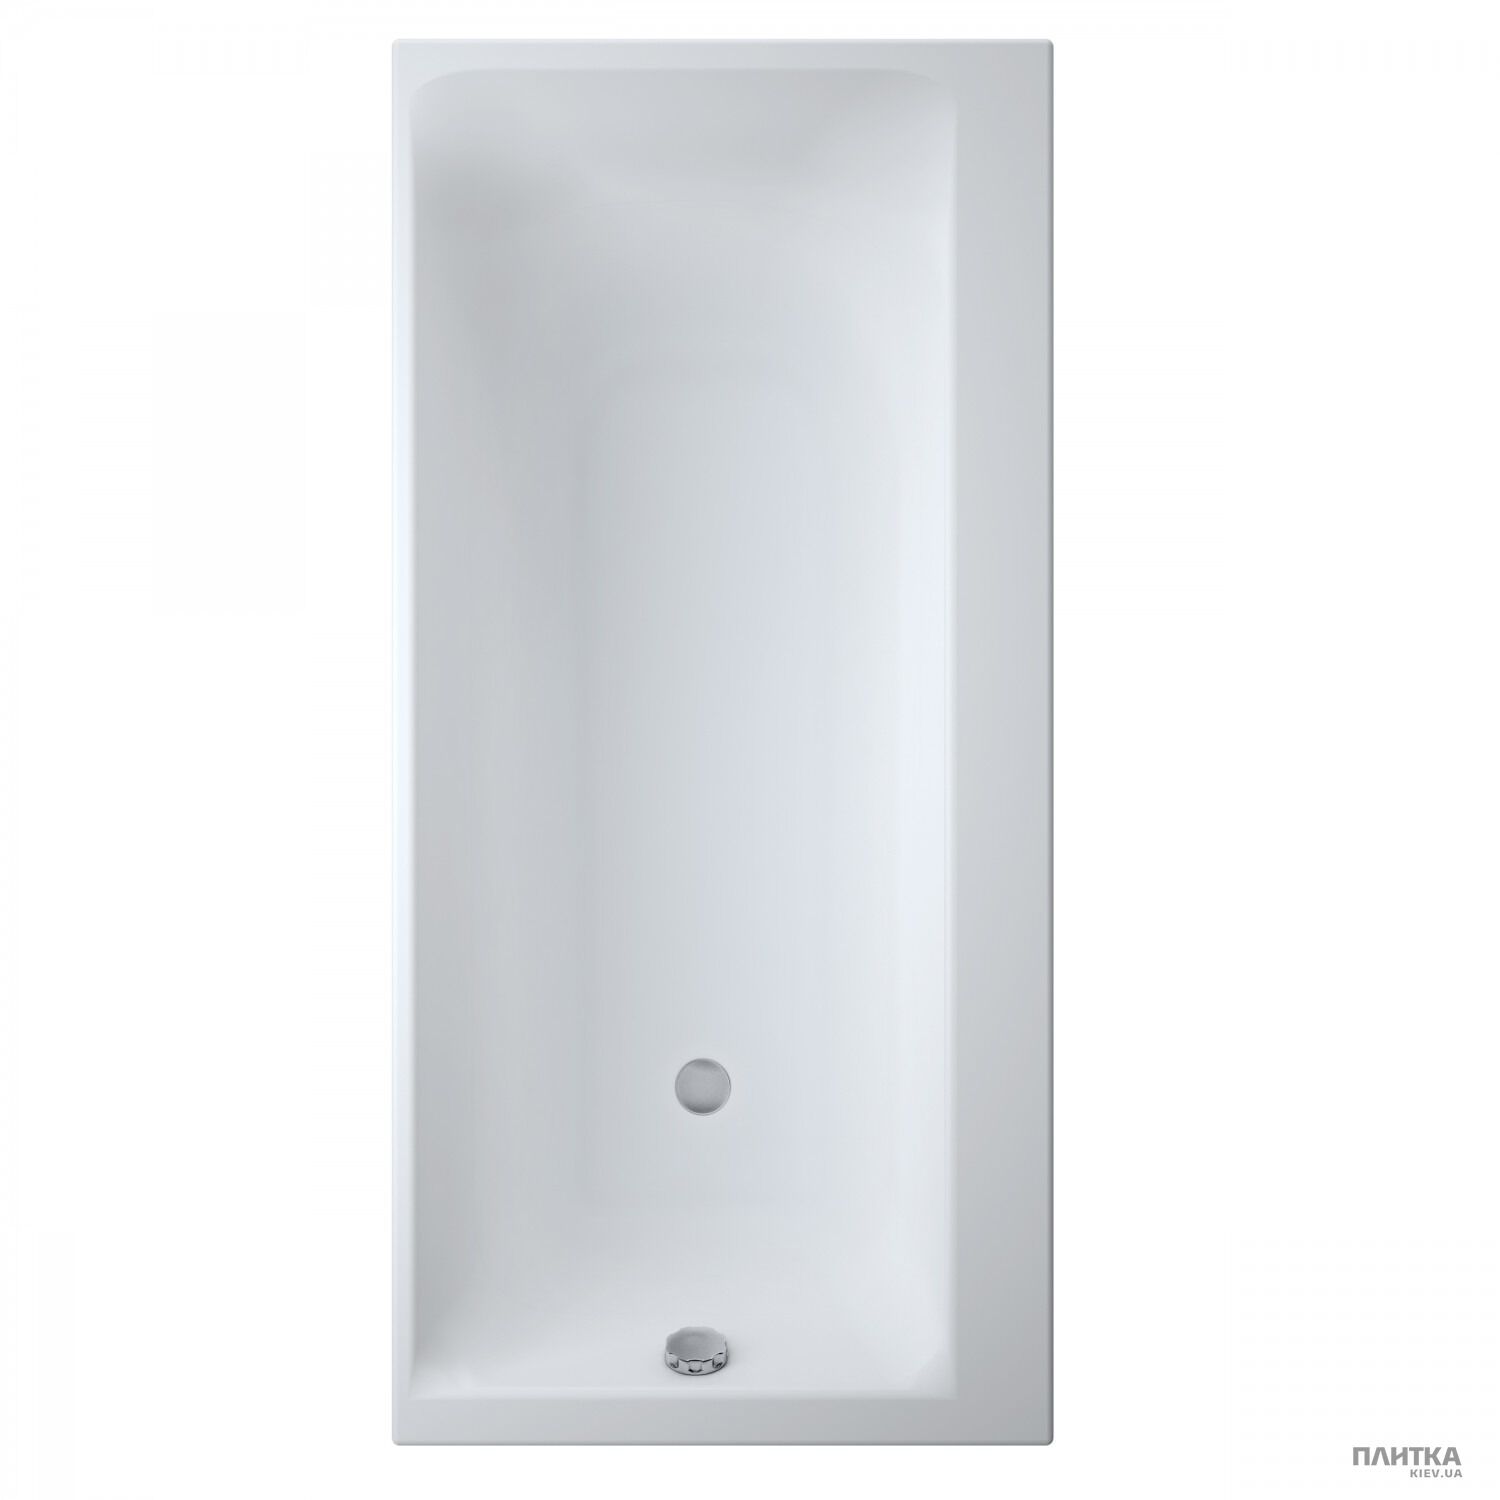 Акрилова ванна Cersanit Smart 170x80 см права білий